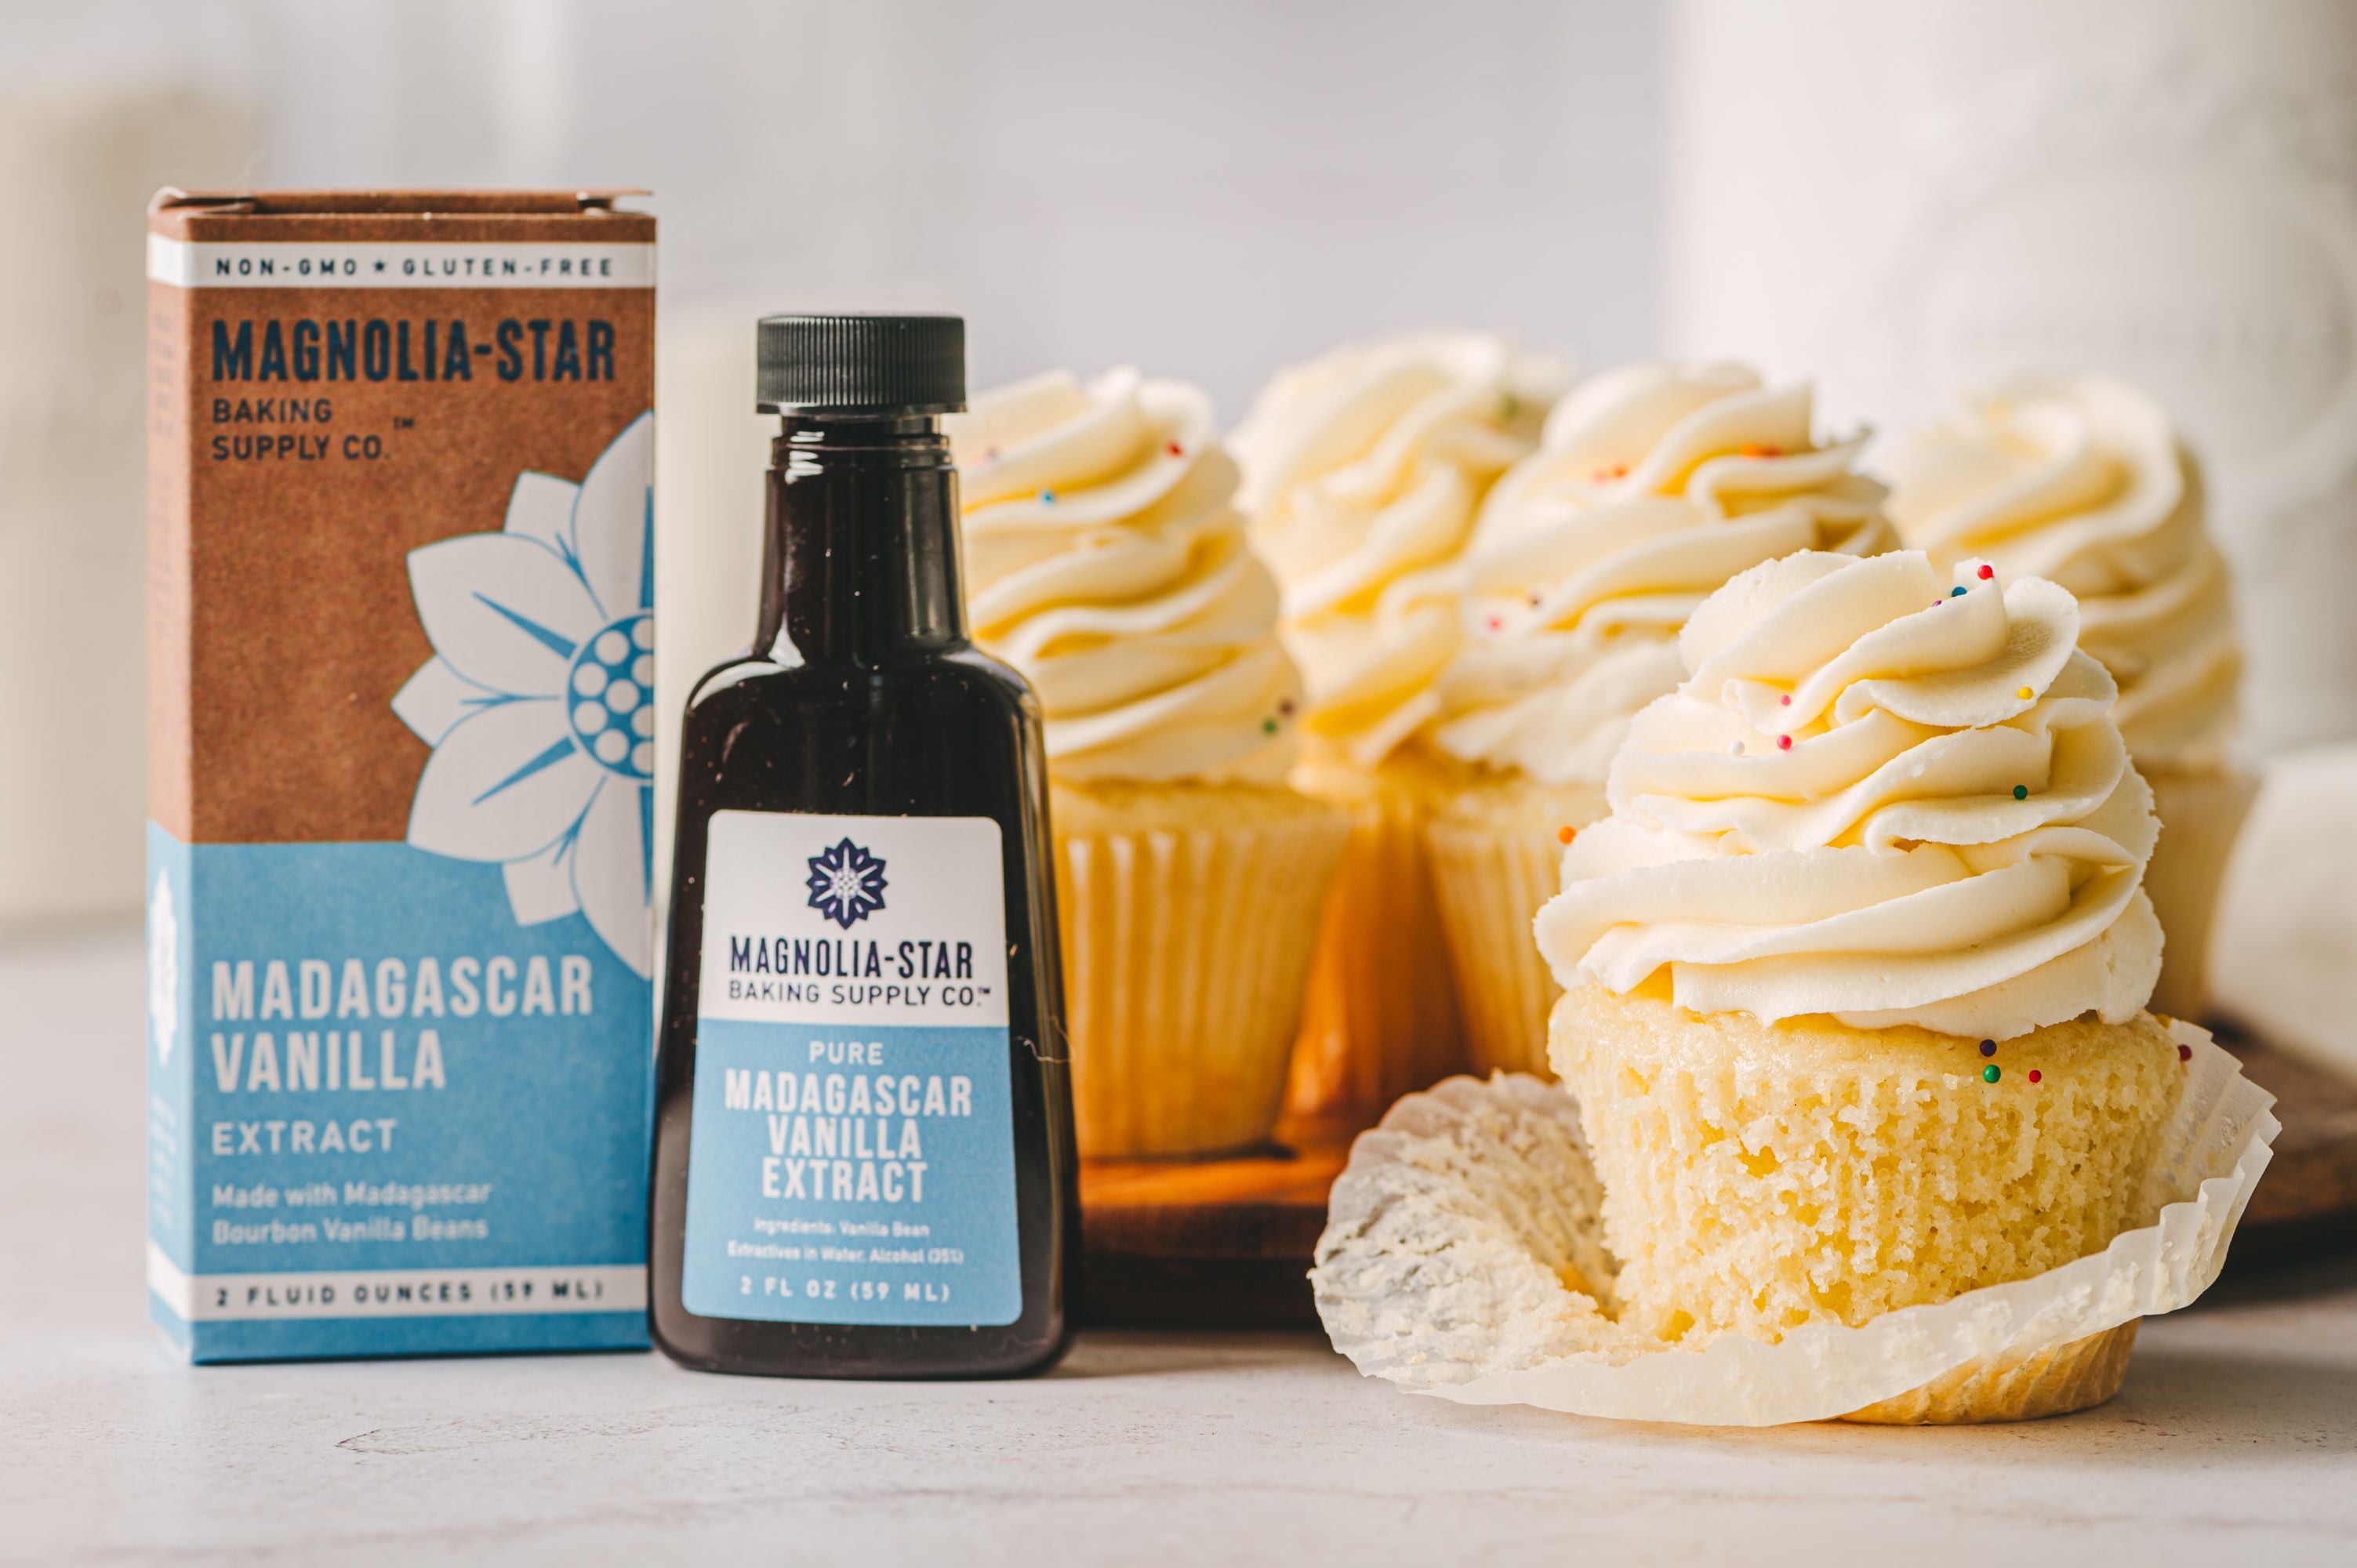 Vanilla Bean Lotion – Whispering Magnolia Farm & Soaps